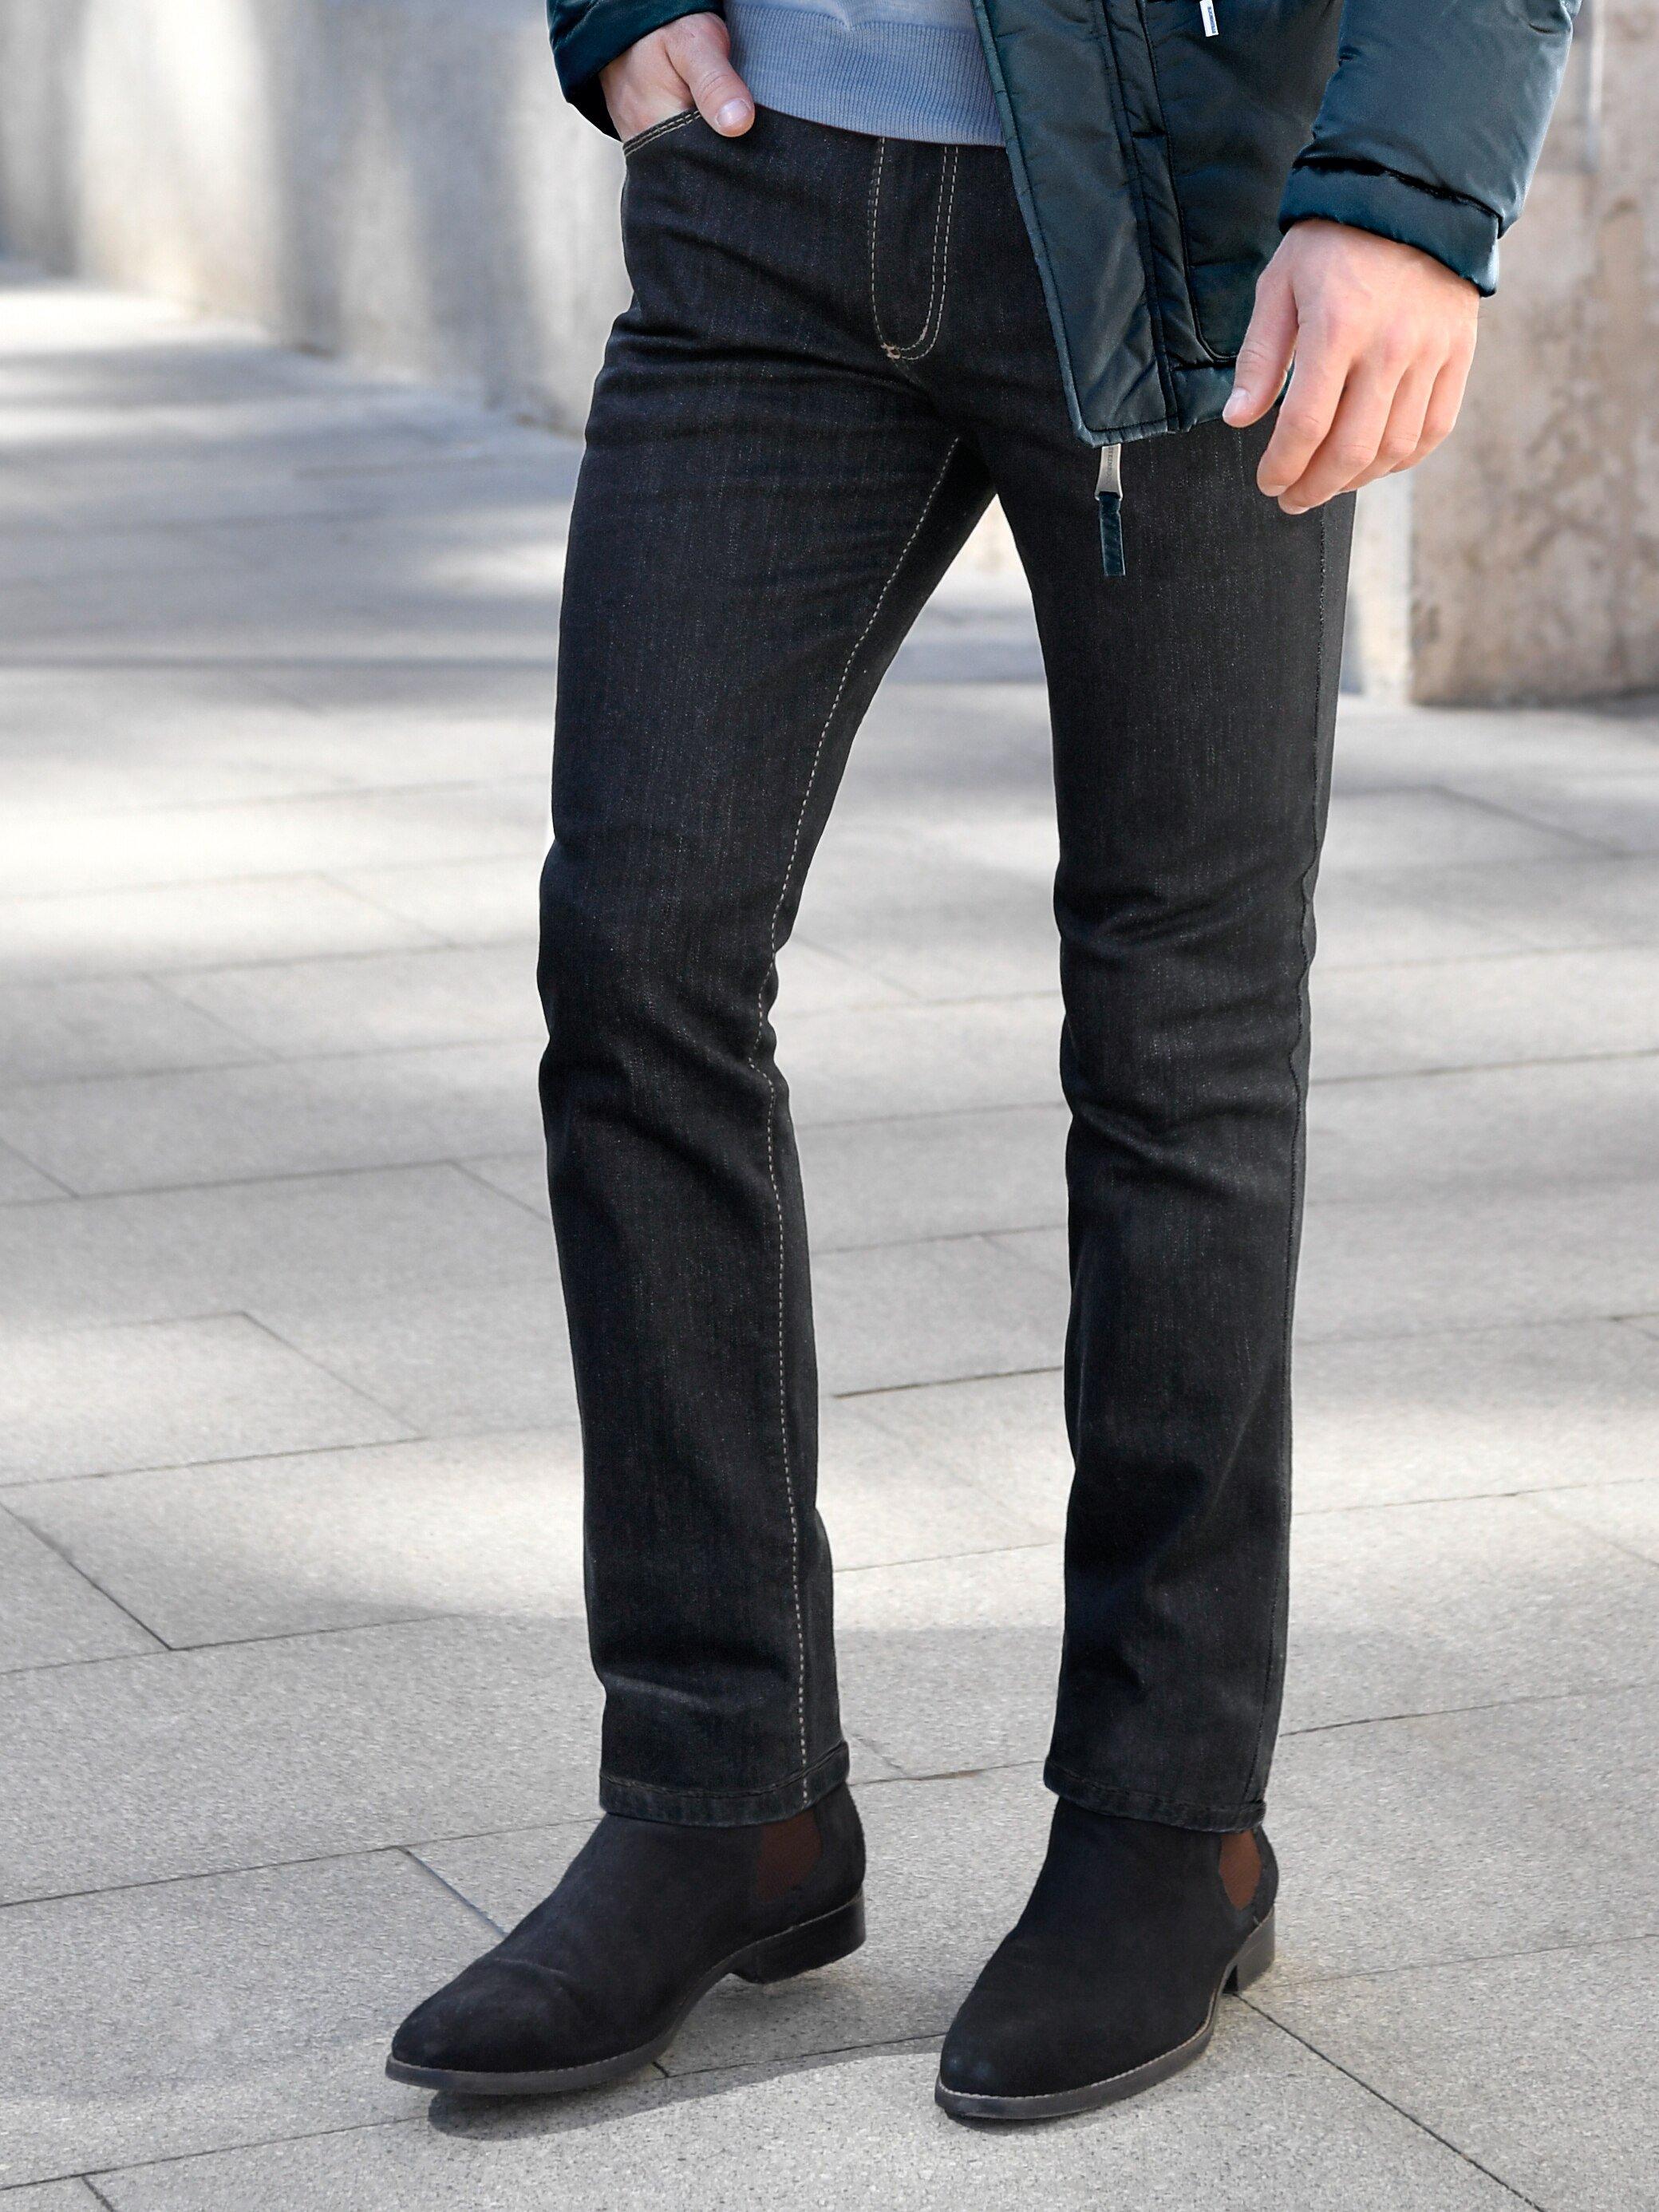 JOKER - Jeans Modell FREDDY Inch 32